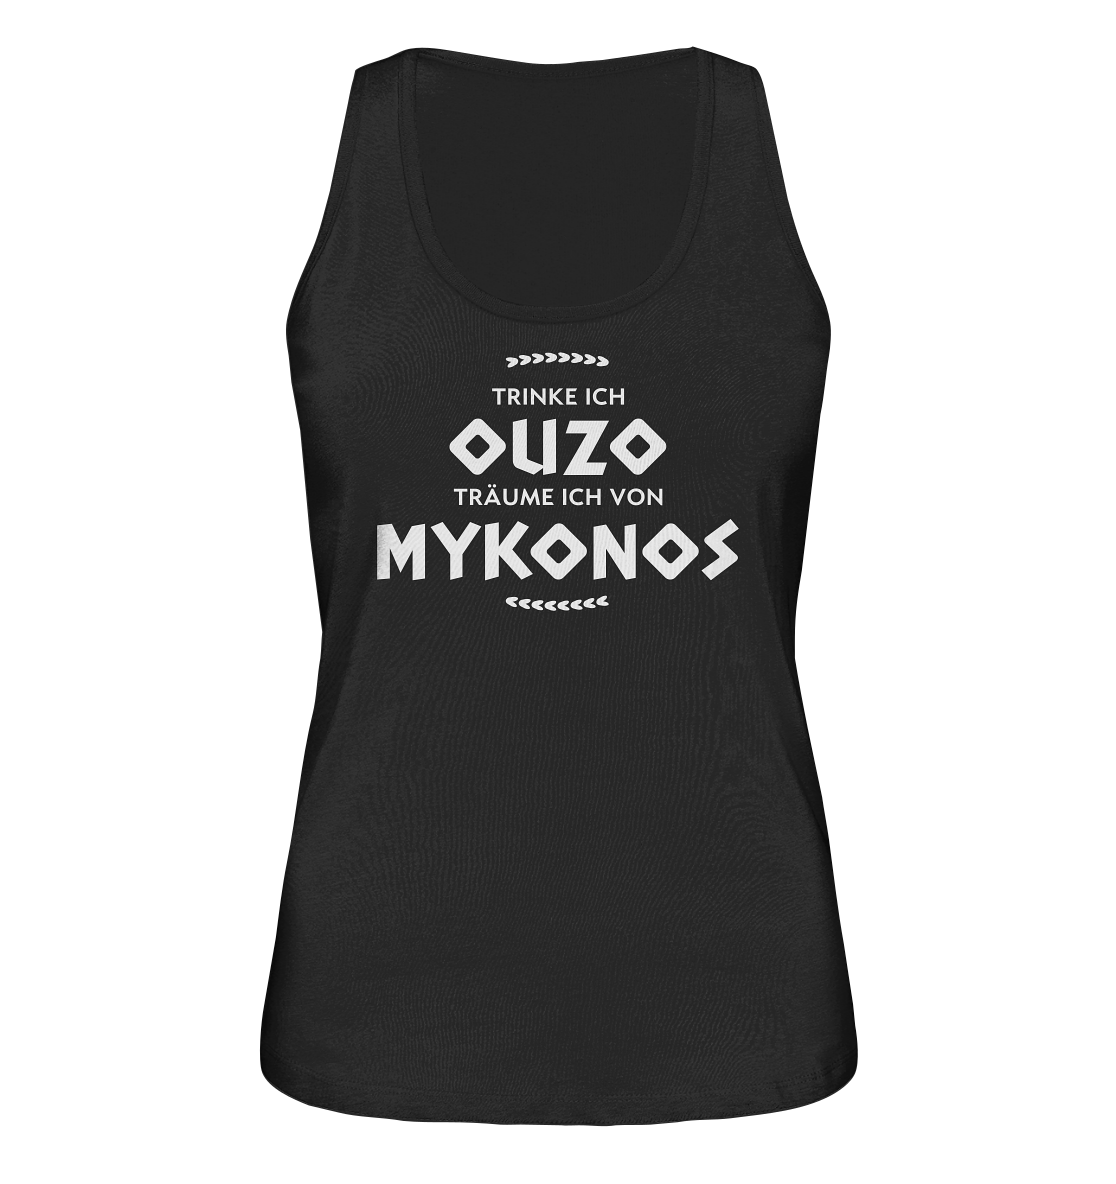 Trinke ich Ouzo träume ich von Mykonos - Ladies Organic Tank-Top